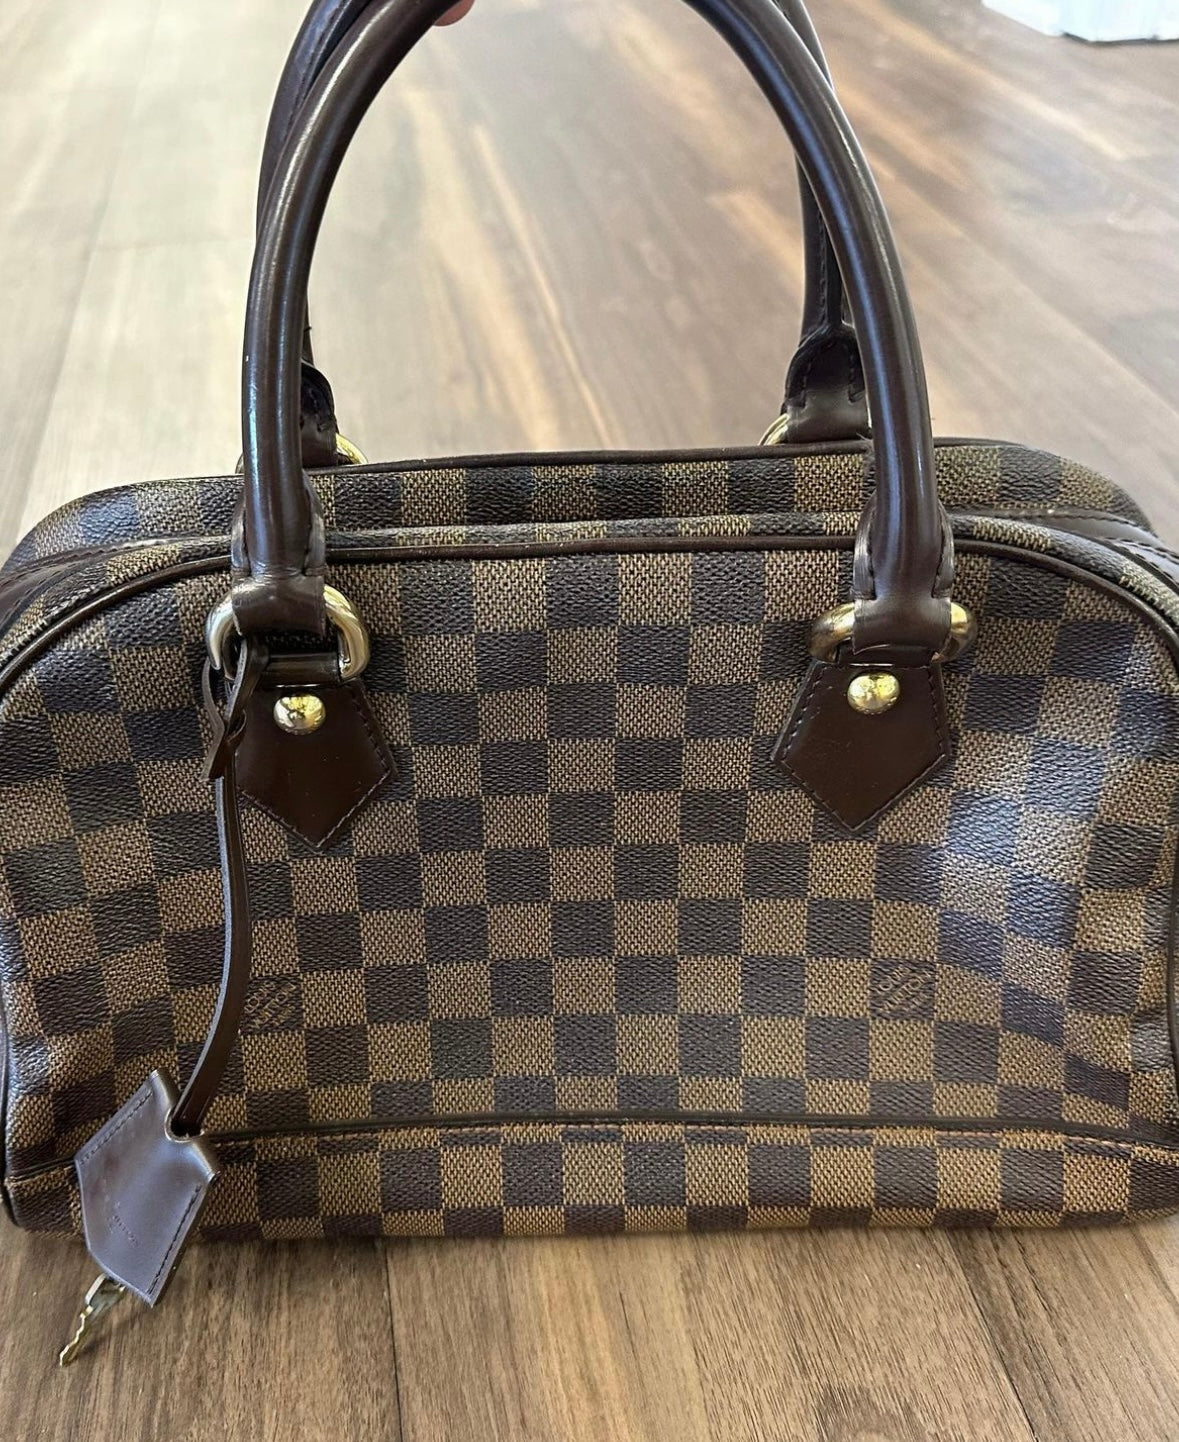 Louis Vuitton Duomo Handbag